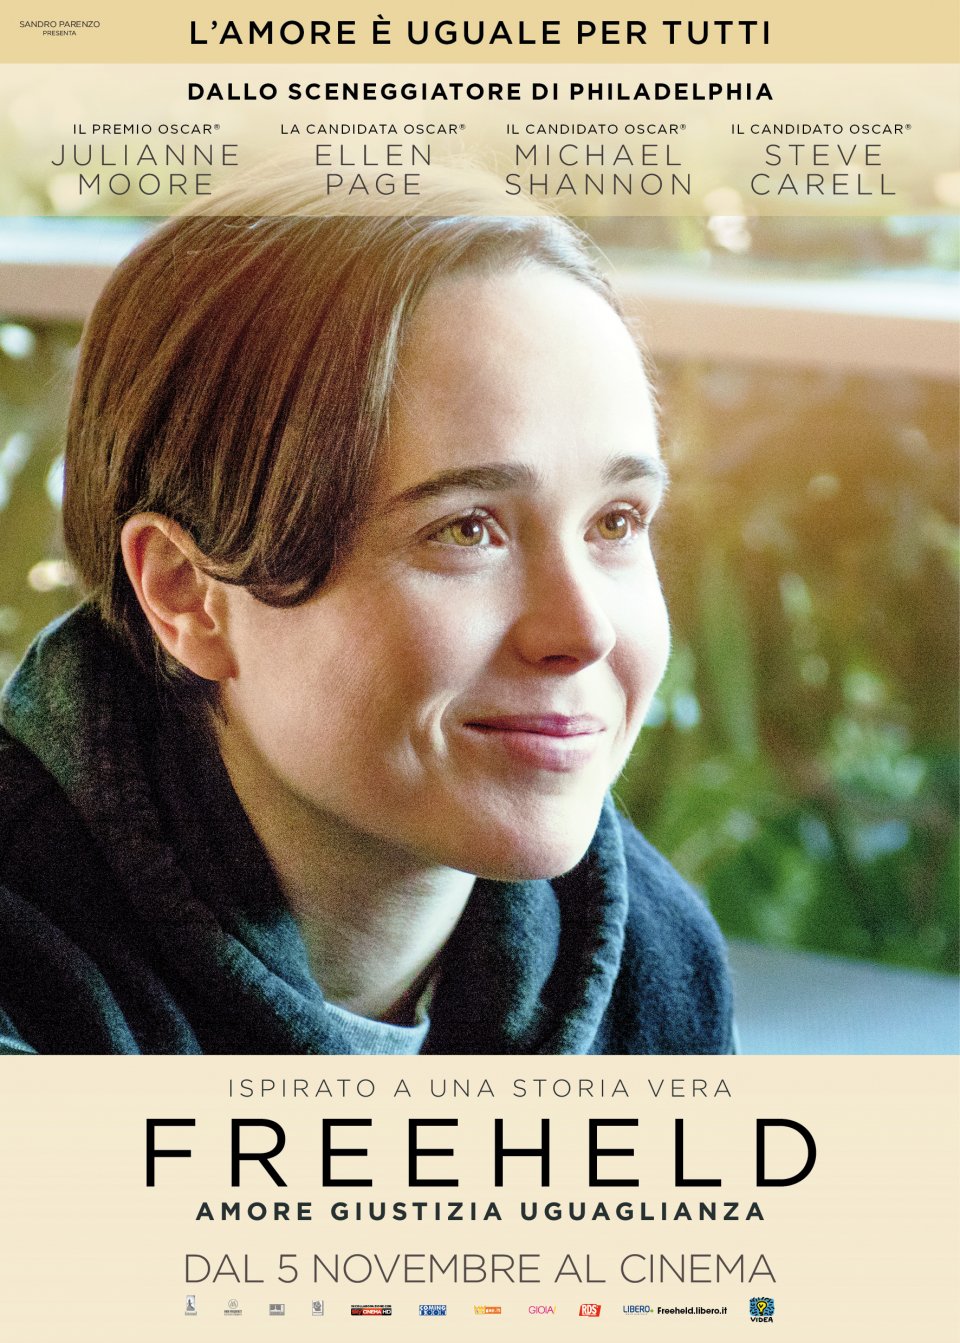 Ellen Page in Freeheld - character poster in esclusiva